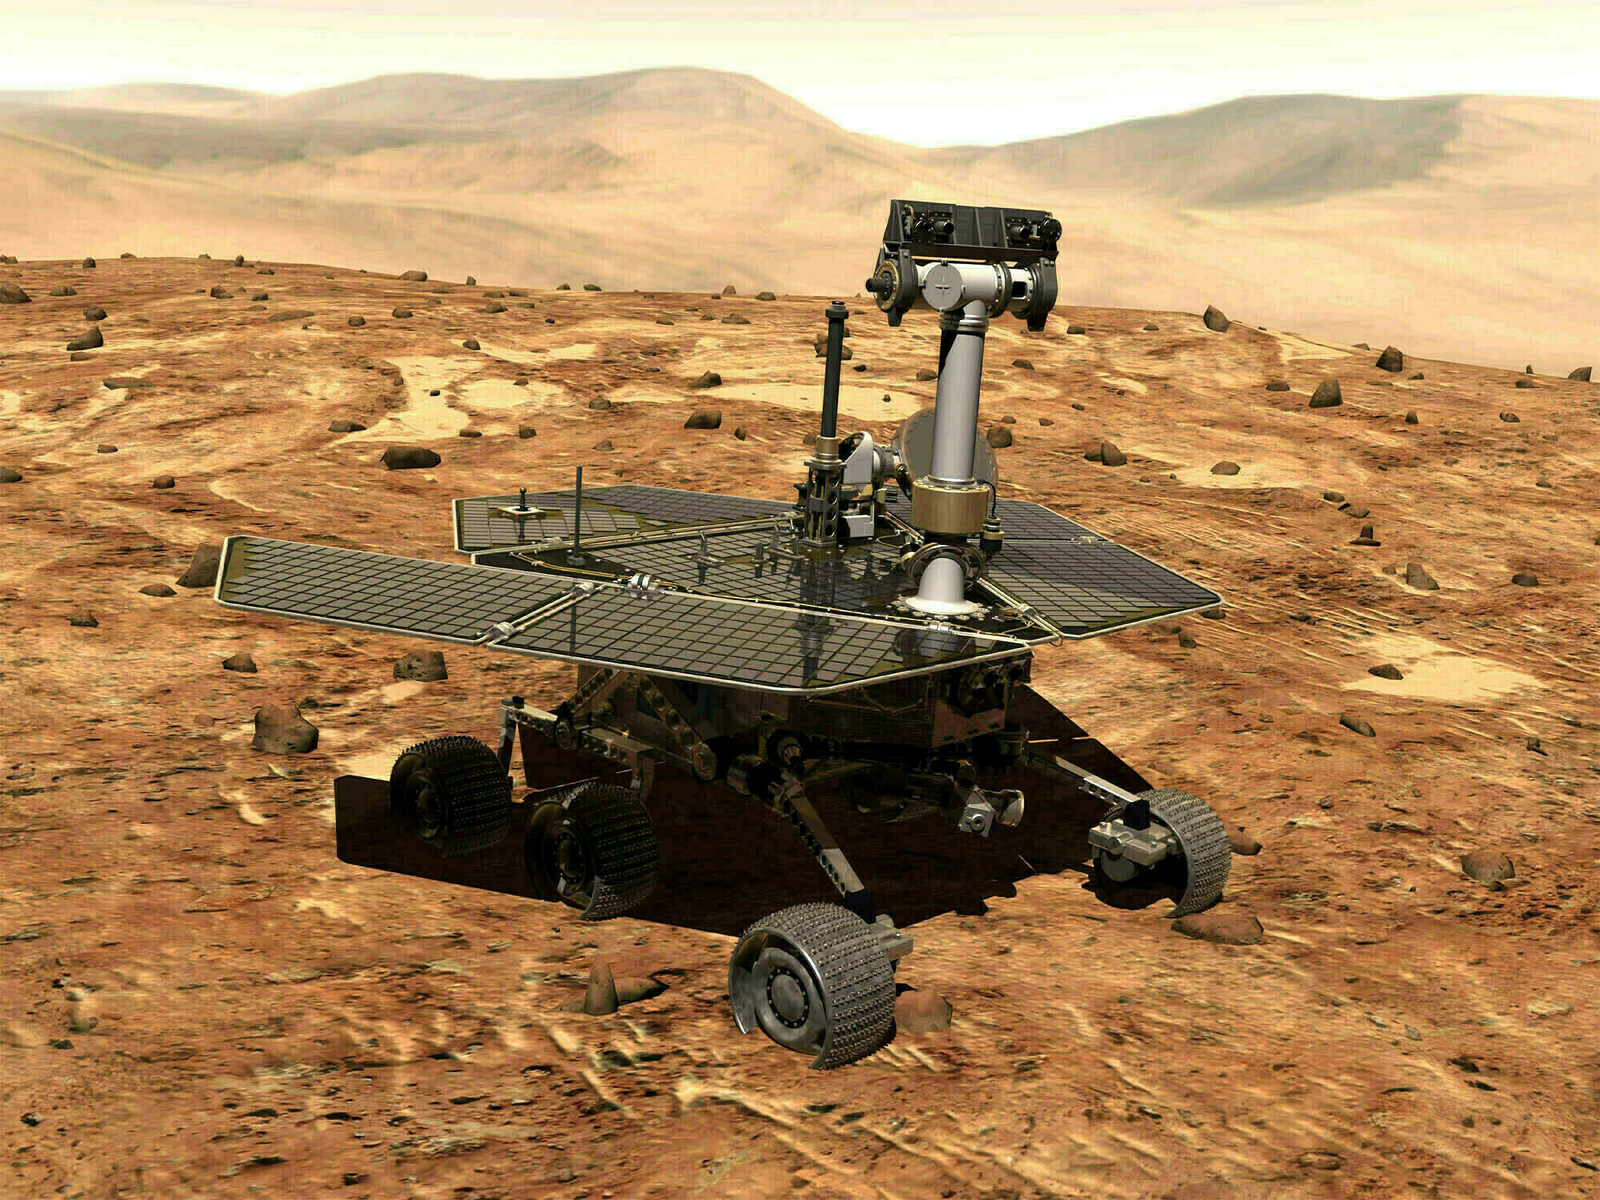 Fin. La sonda rodante Opportunity en la superficie de Marte dejó de enviar información a la NASA. (AP)